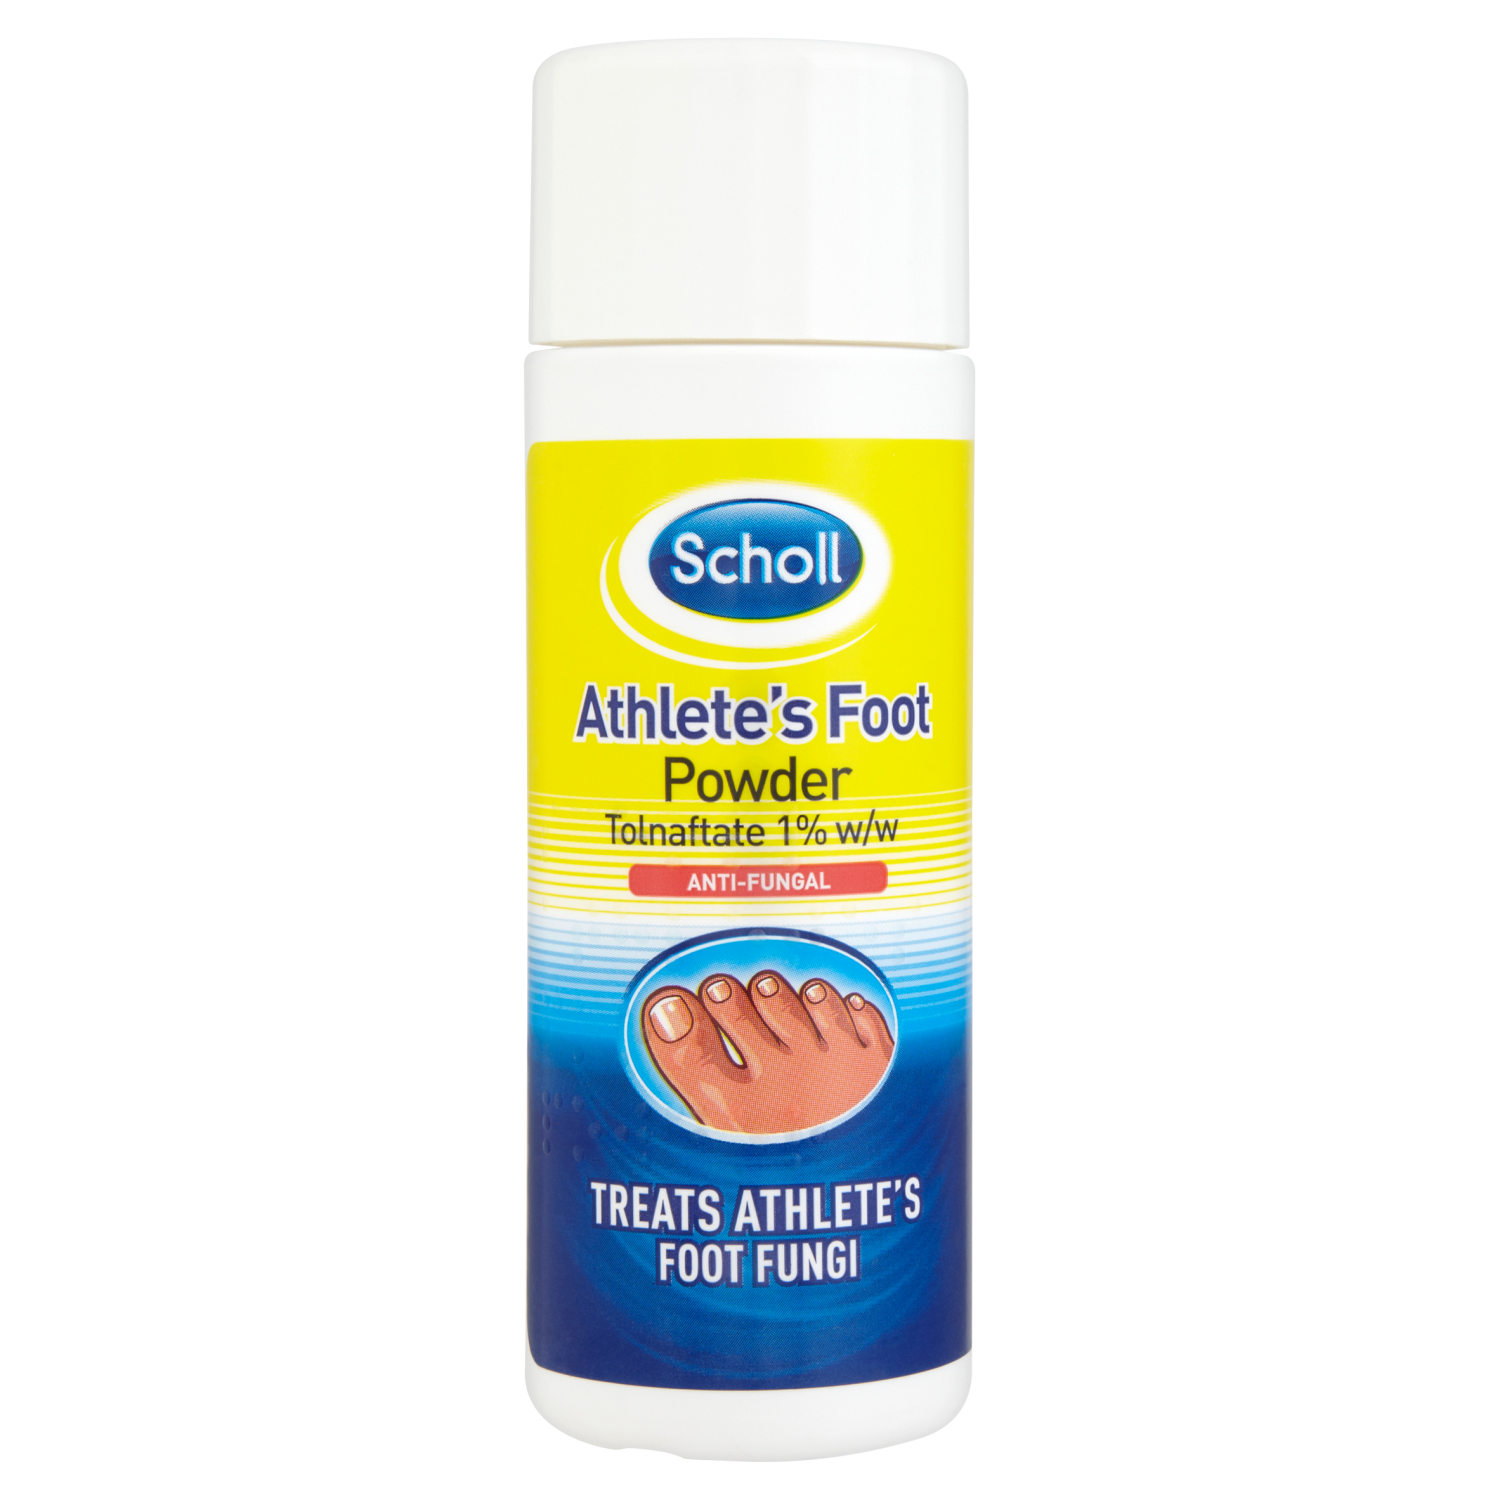 Scholl Athlete's Foot Powder Tolnaftate 